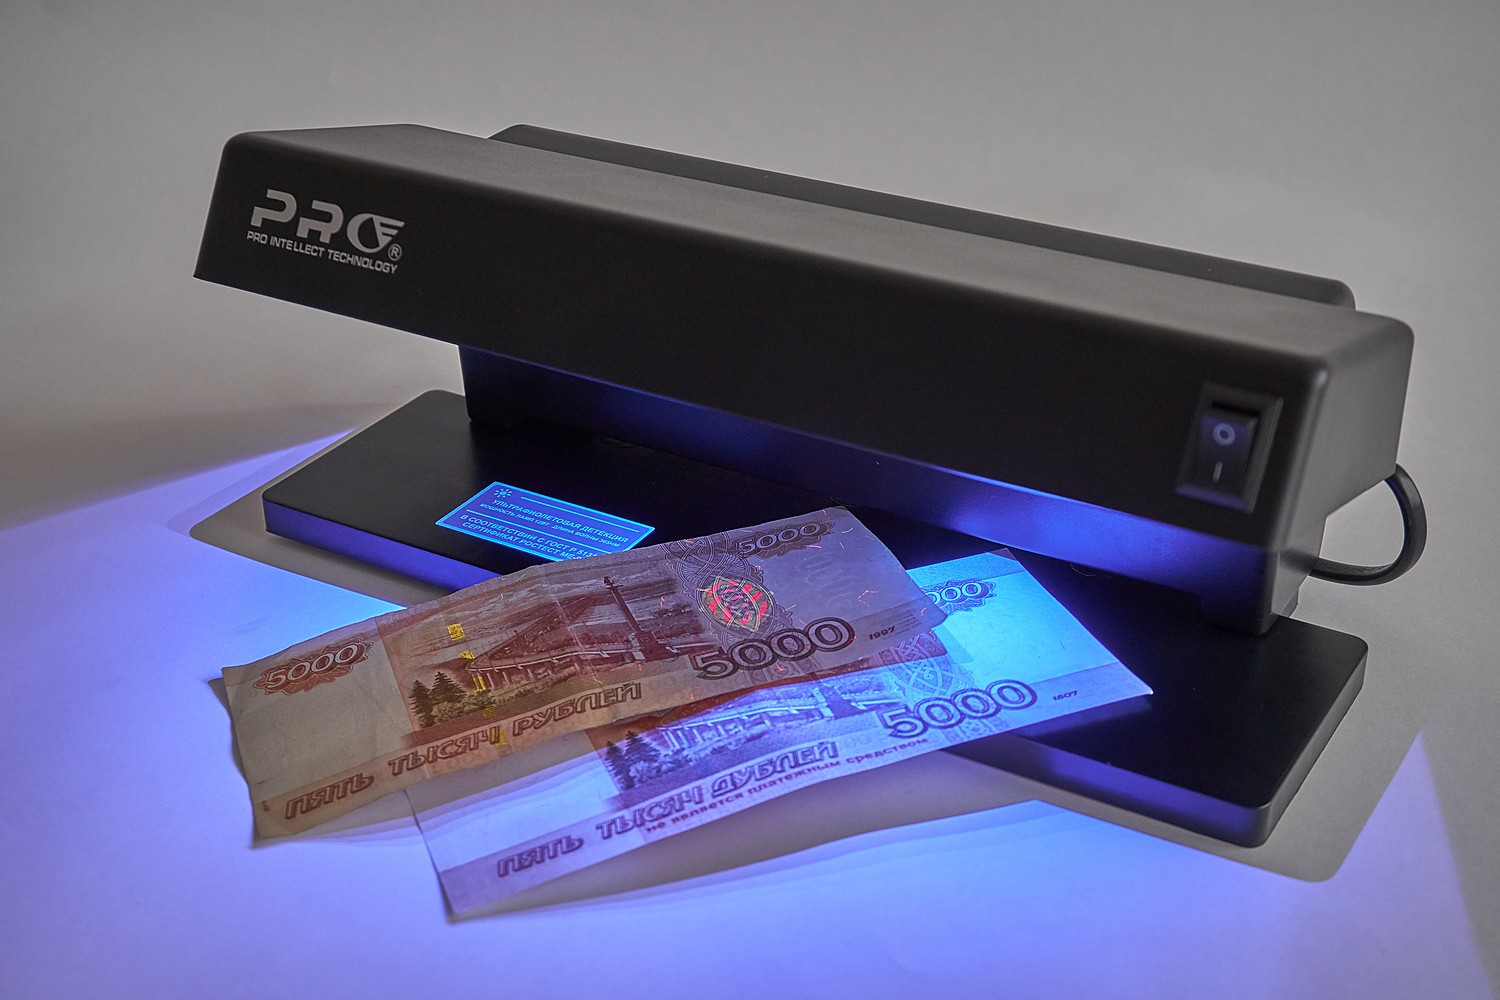 Устройство в купюре. Детектор банкнот Pro 12lpm. Детектор банкнот Pro 12 led т-06349. Pro детектор банкнот Pro 4 led. "Детектор валют ir-1750".